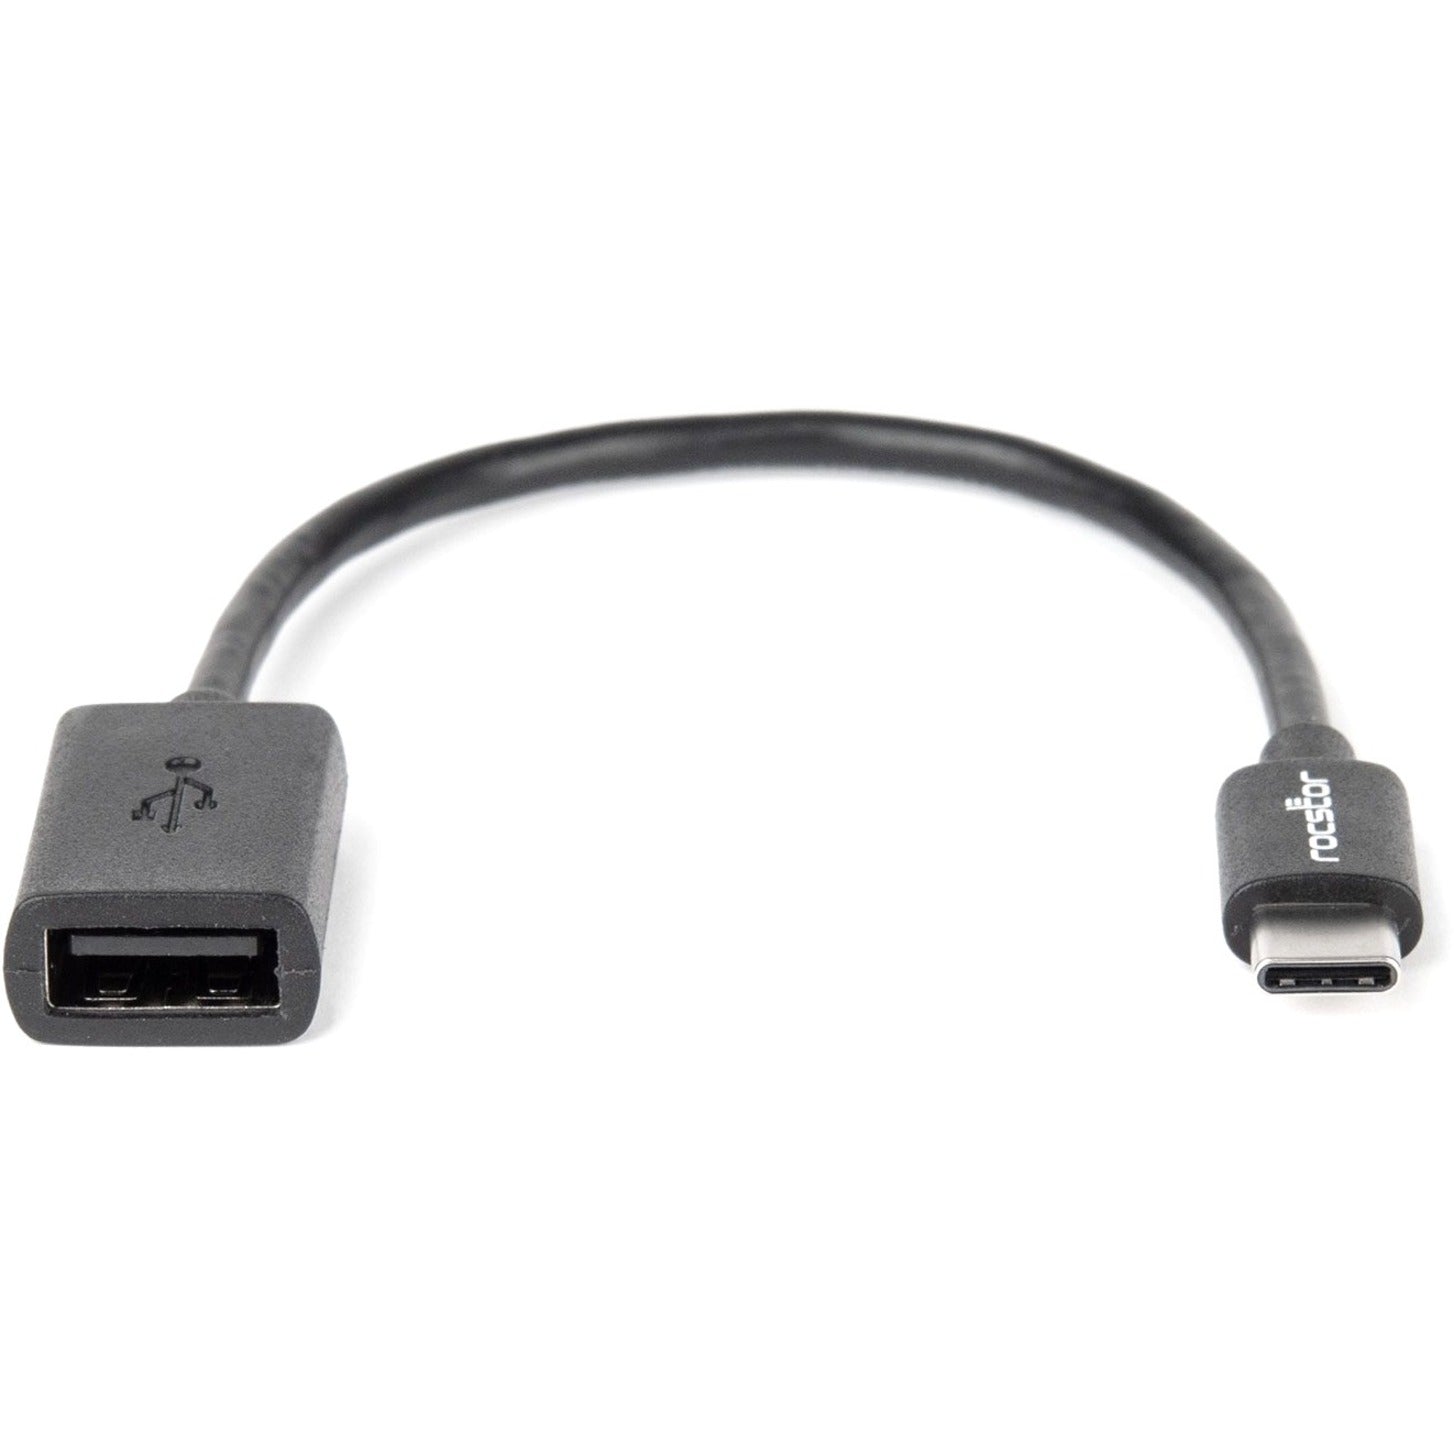 Rocstor Y10C142-B1 Premium Adattatore di Trasferimento Dati USB USB-C Gen1 a USB 2.0 Tipo A M/F